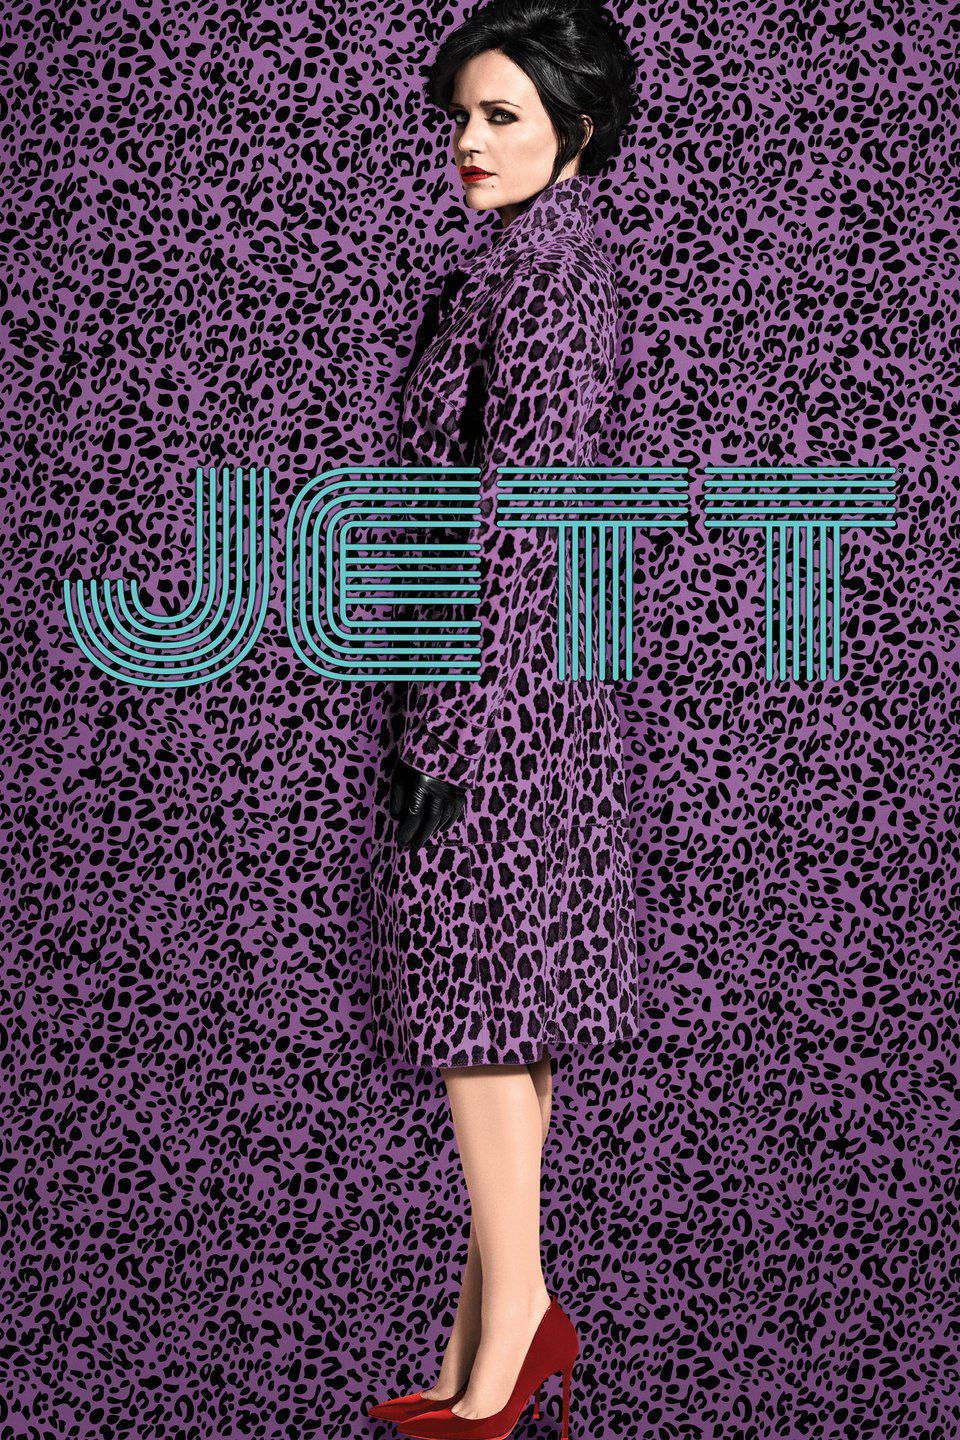 TV ratings for Jett in Brazil. Cinemax TV series